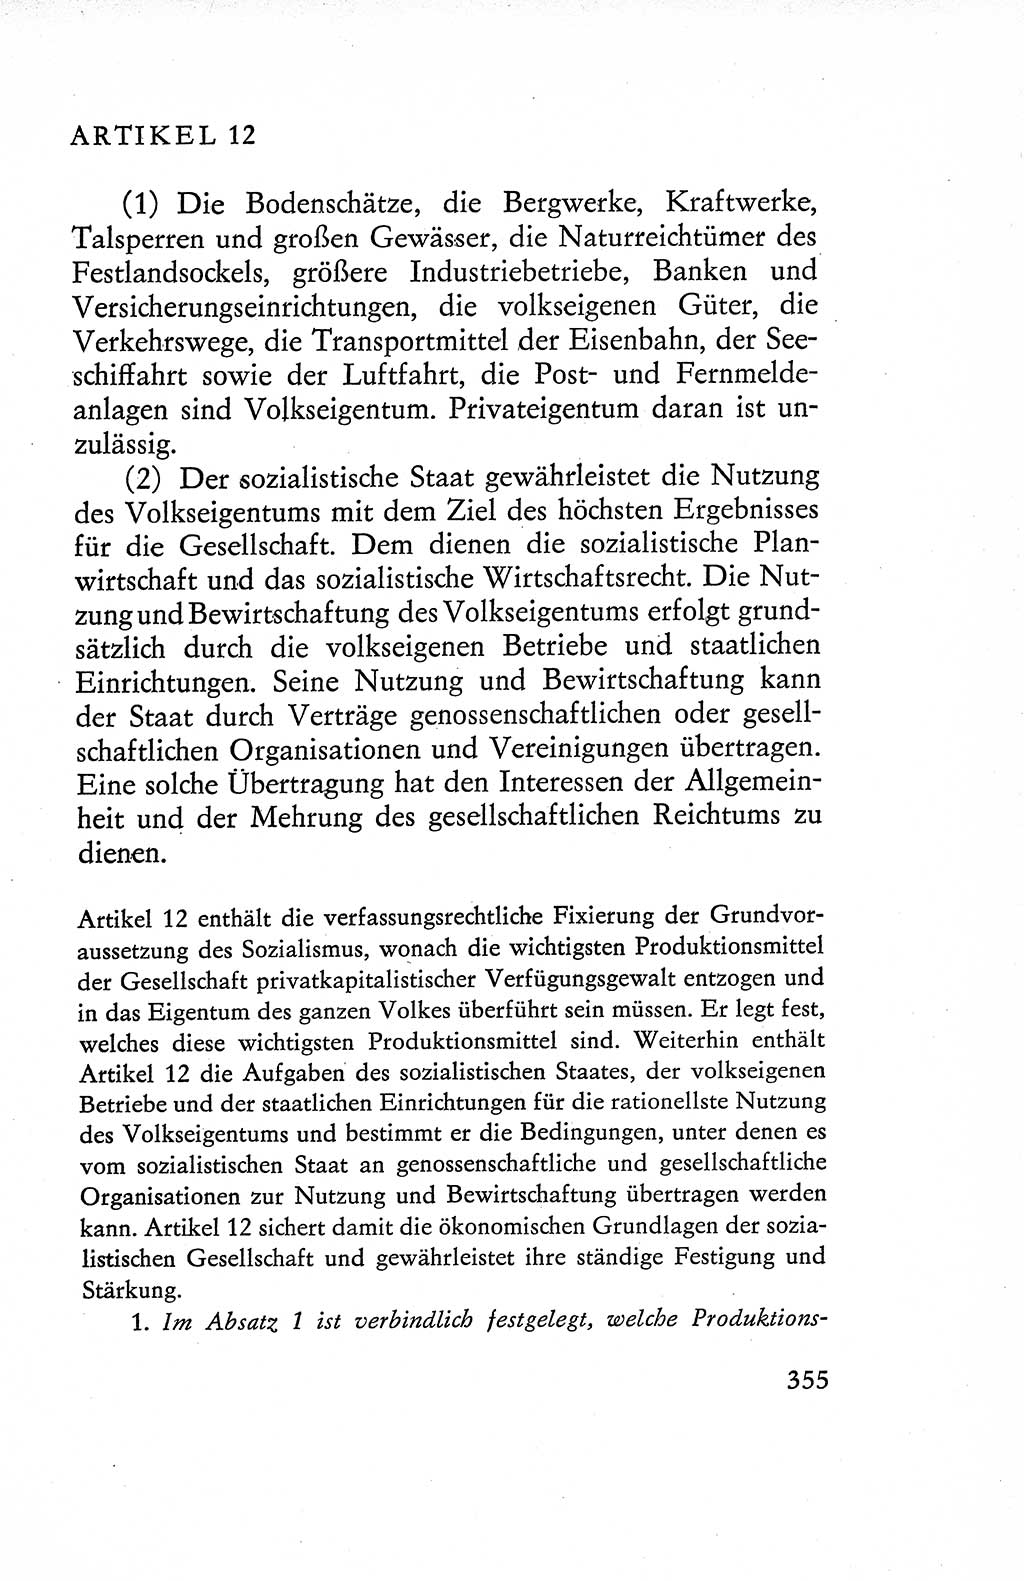 Verfassung der Deutschen Demokratischen Republik (DDR), Dokumente, Kommentar 1969, Band 1, Seite 355 (Verf. DDR Dok. Komm. 1969, Bd. 1, S. 355)